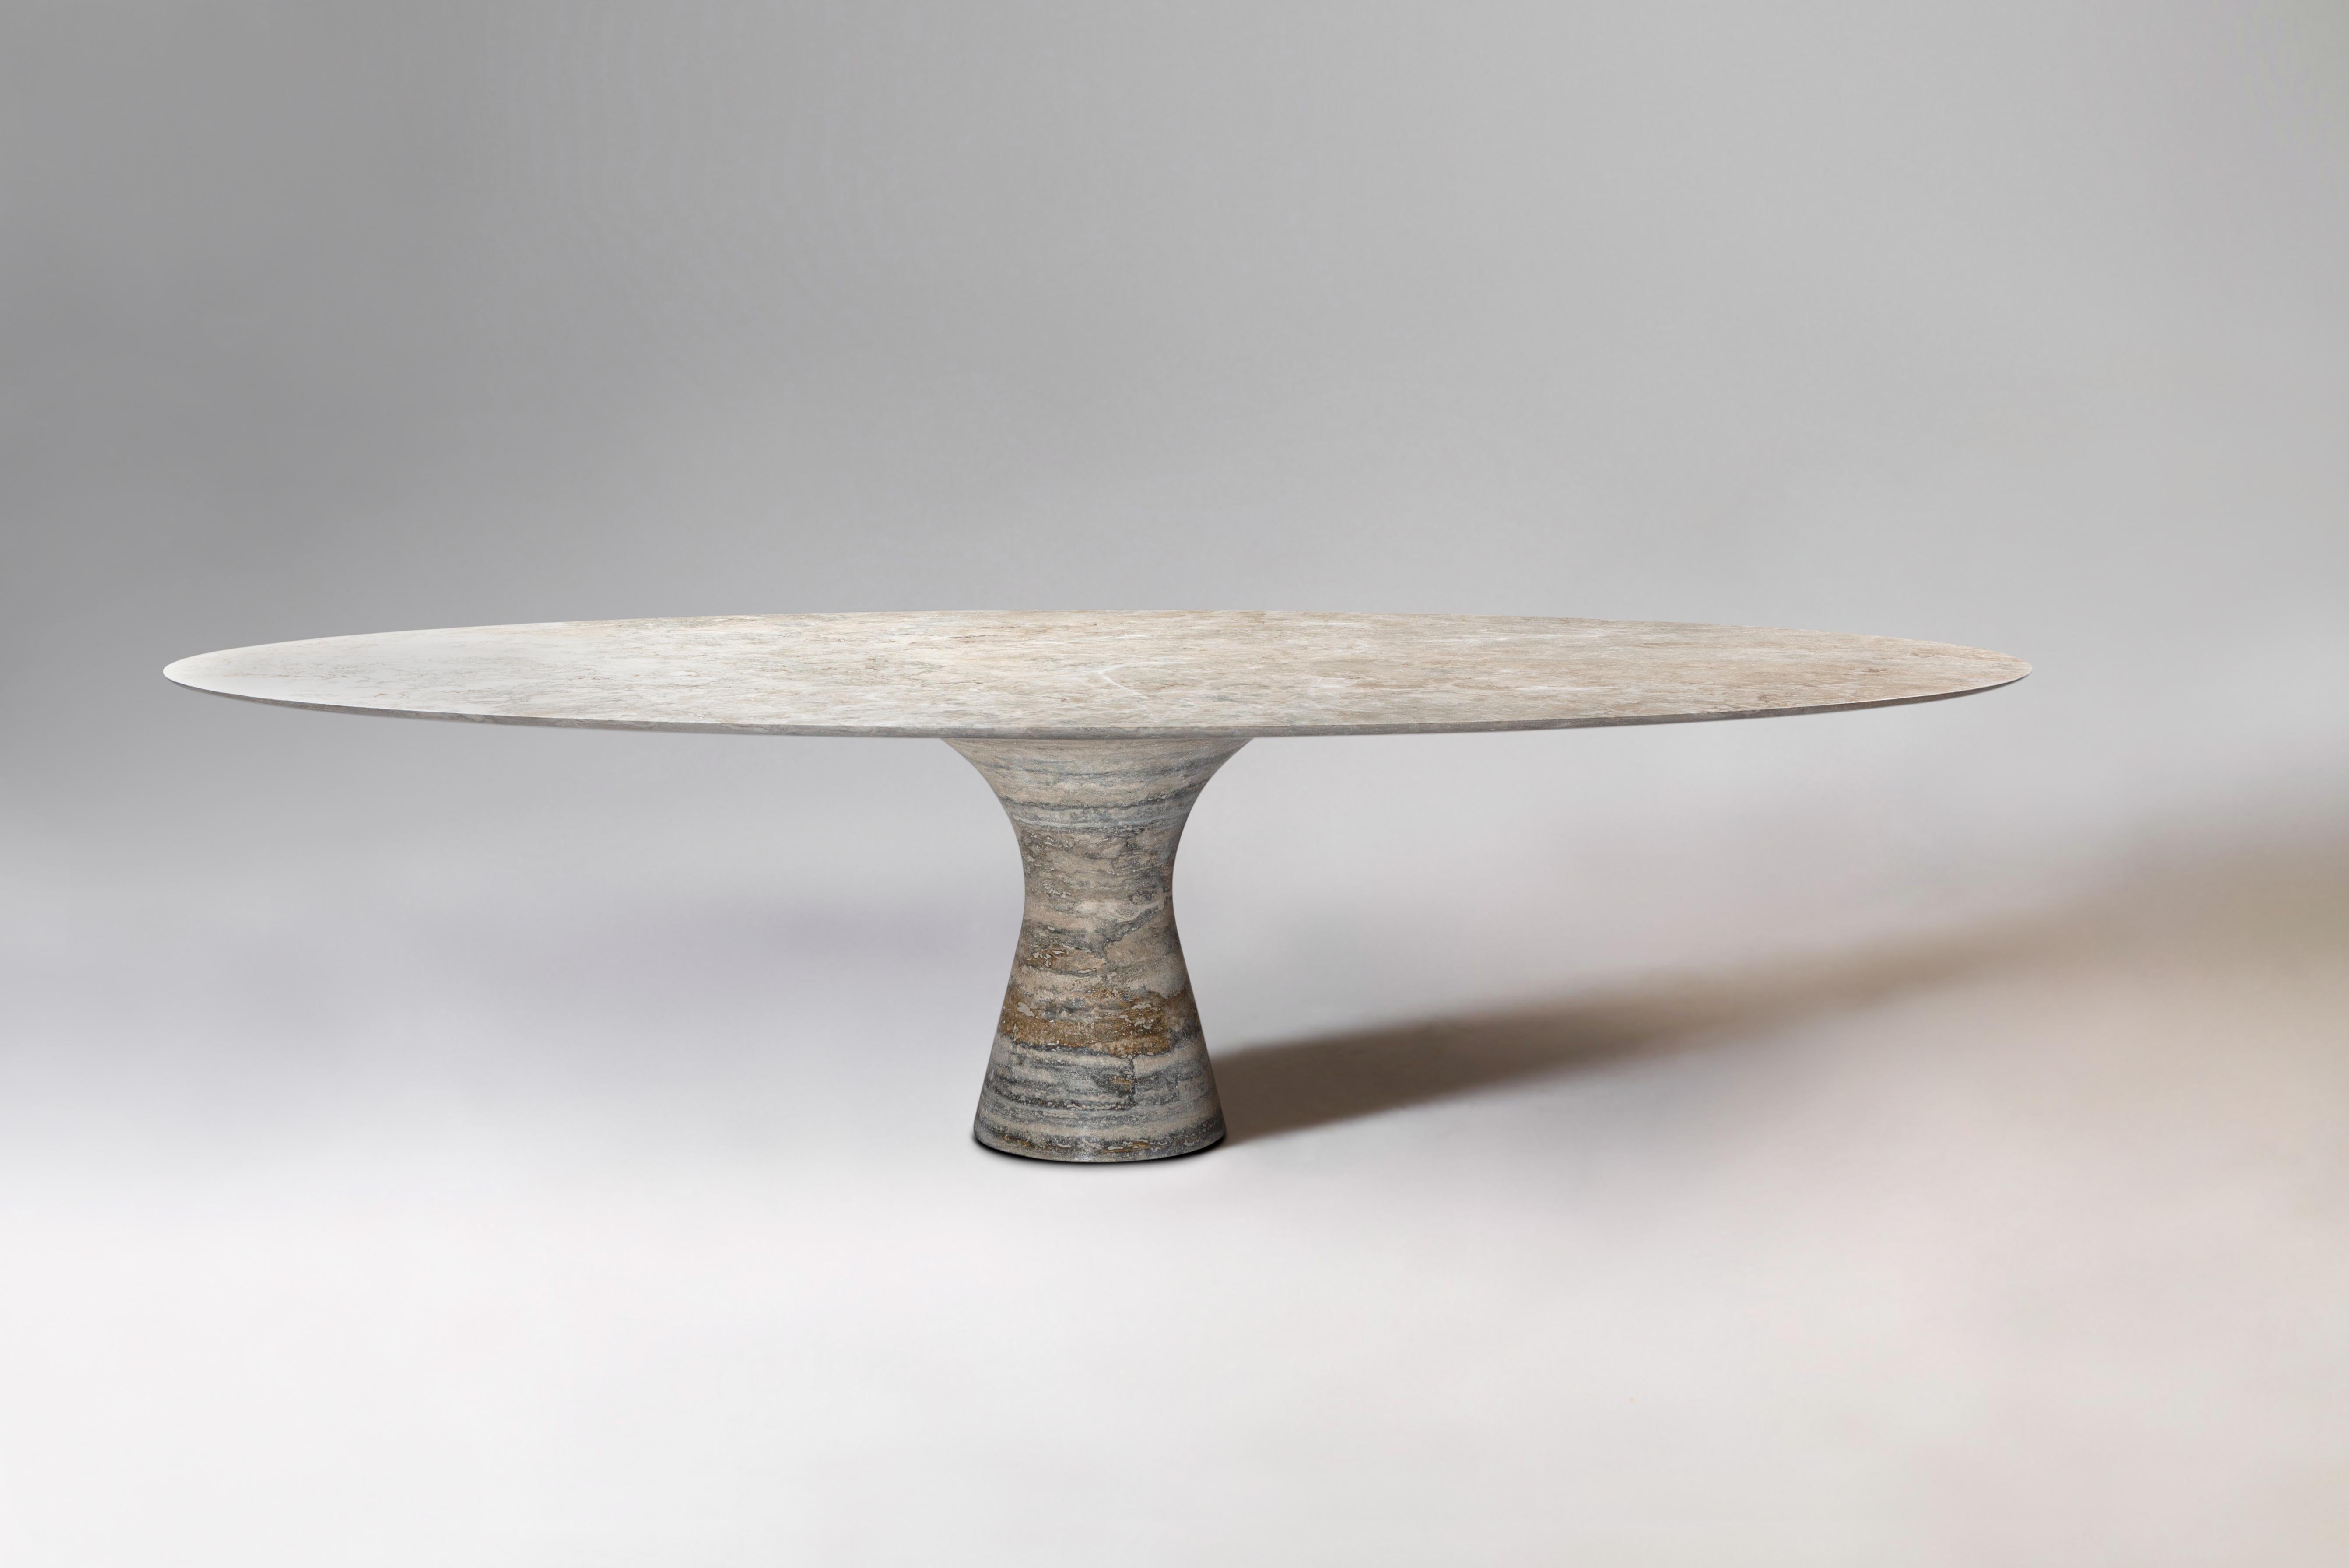 Travertino Silver Refined Contemporary Marmor Oval Tisch 130/27
Abmessungen: 130 x 27 cm
MATERIALIEN: Travertino Silber 

Angelo ist die Essenz eines runden Tisches aus Naturstein, eine skulpturale Form aus robustem Material mit eleganten Linien und